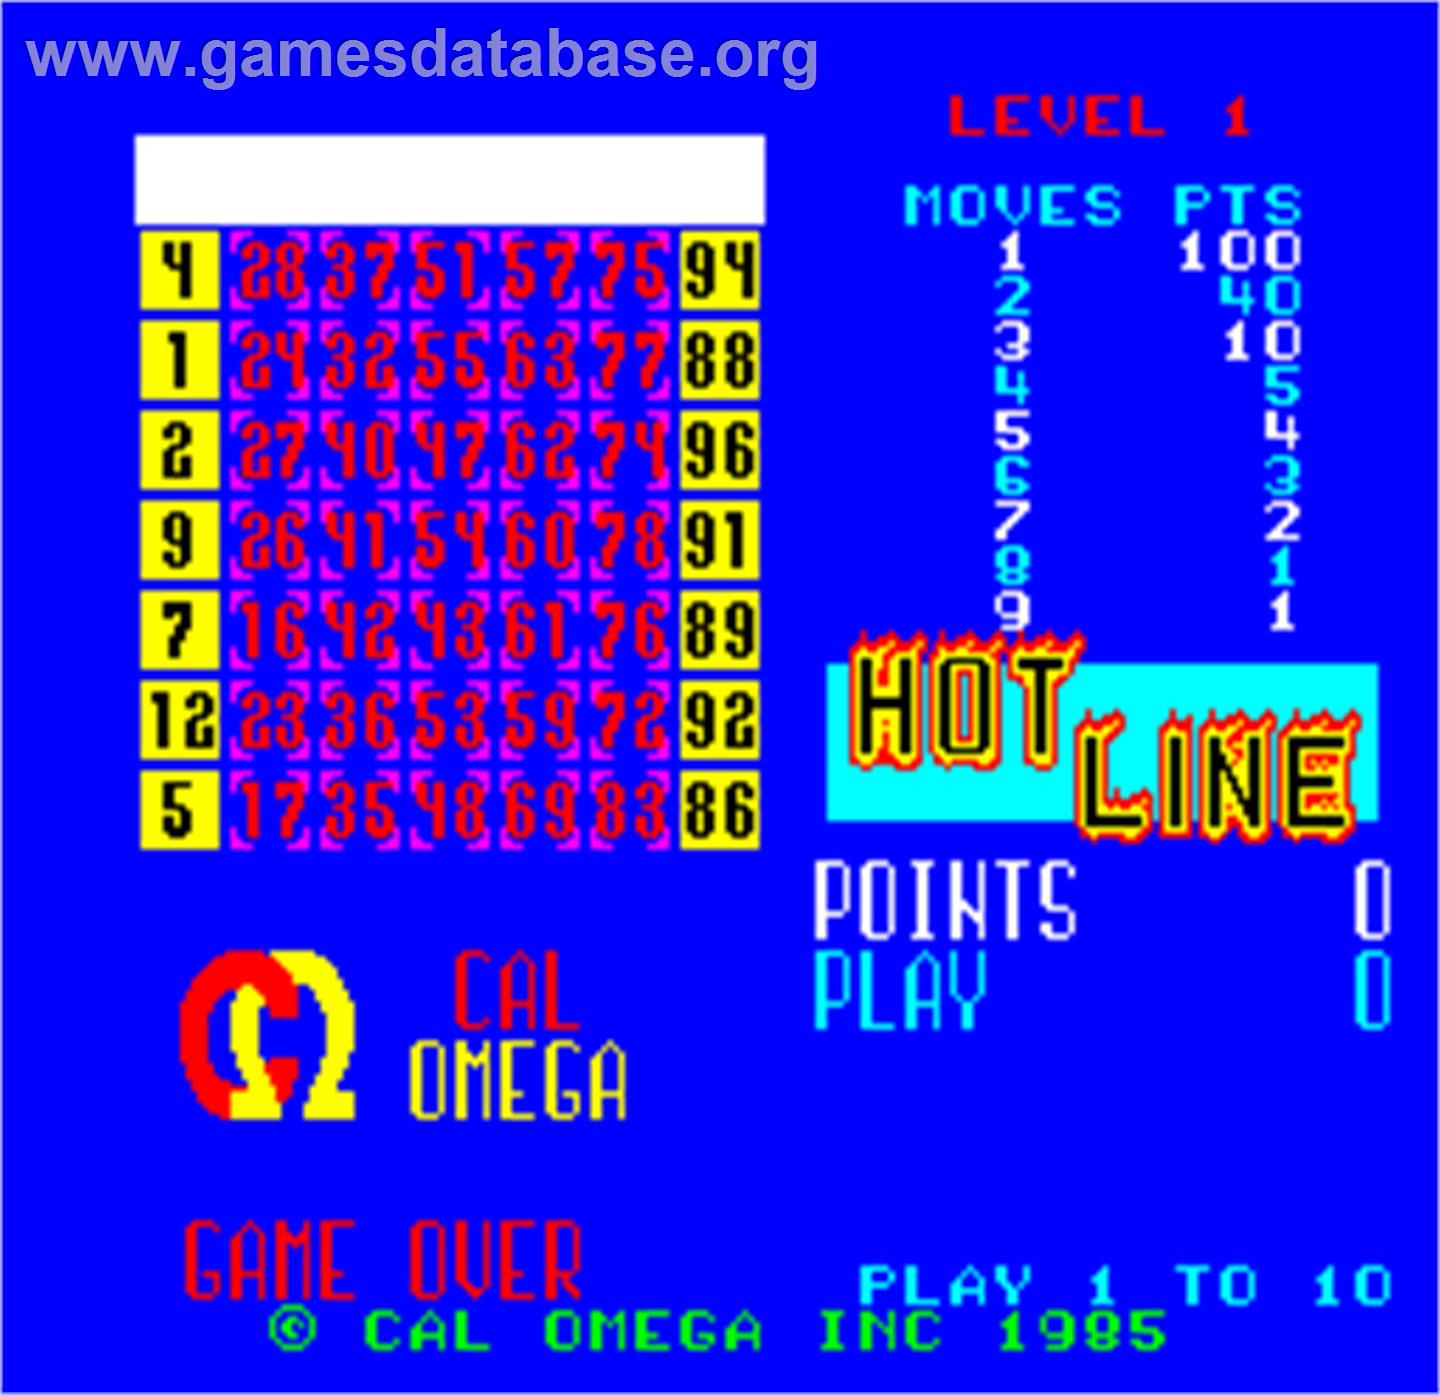 Cal Omega - Game 24.6 - Arcade - Artwork - Title Screen